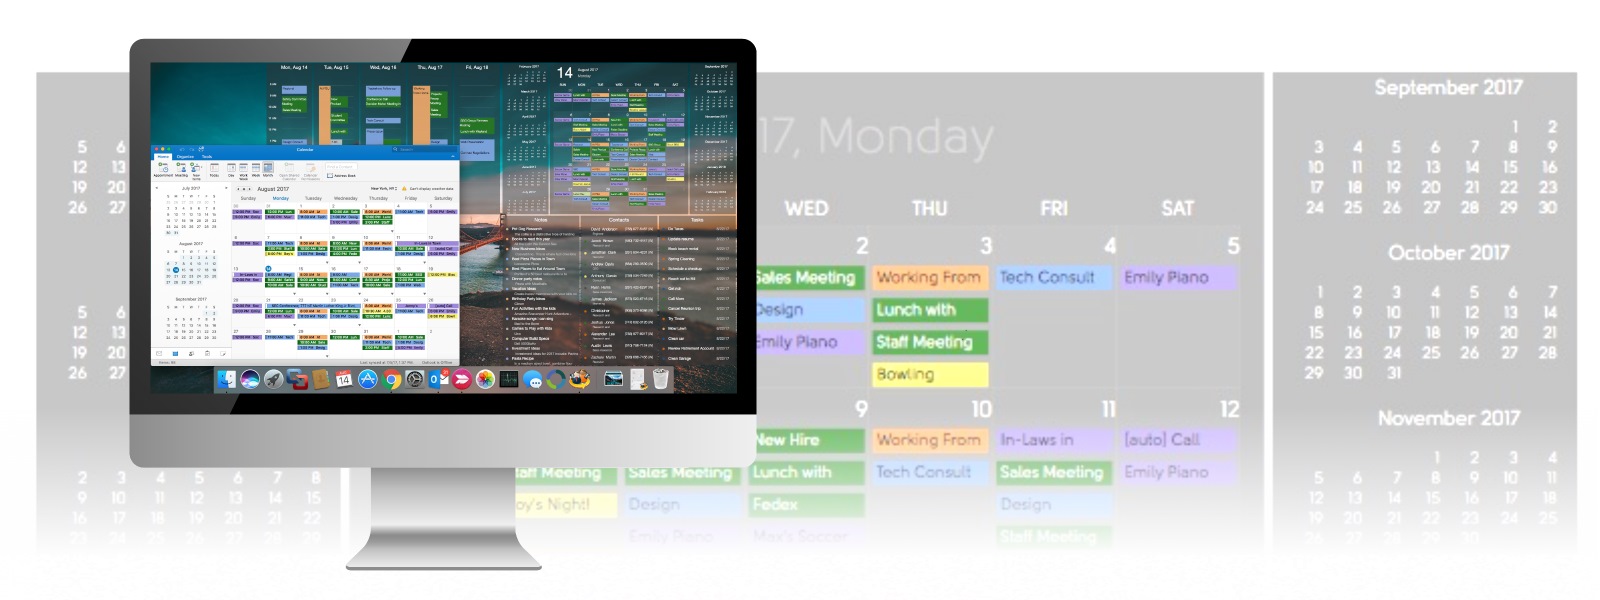 DejaDesktop Calendar Wallpaper - Put a Calendar on your Windows Wallpaper